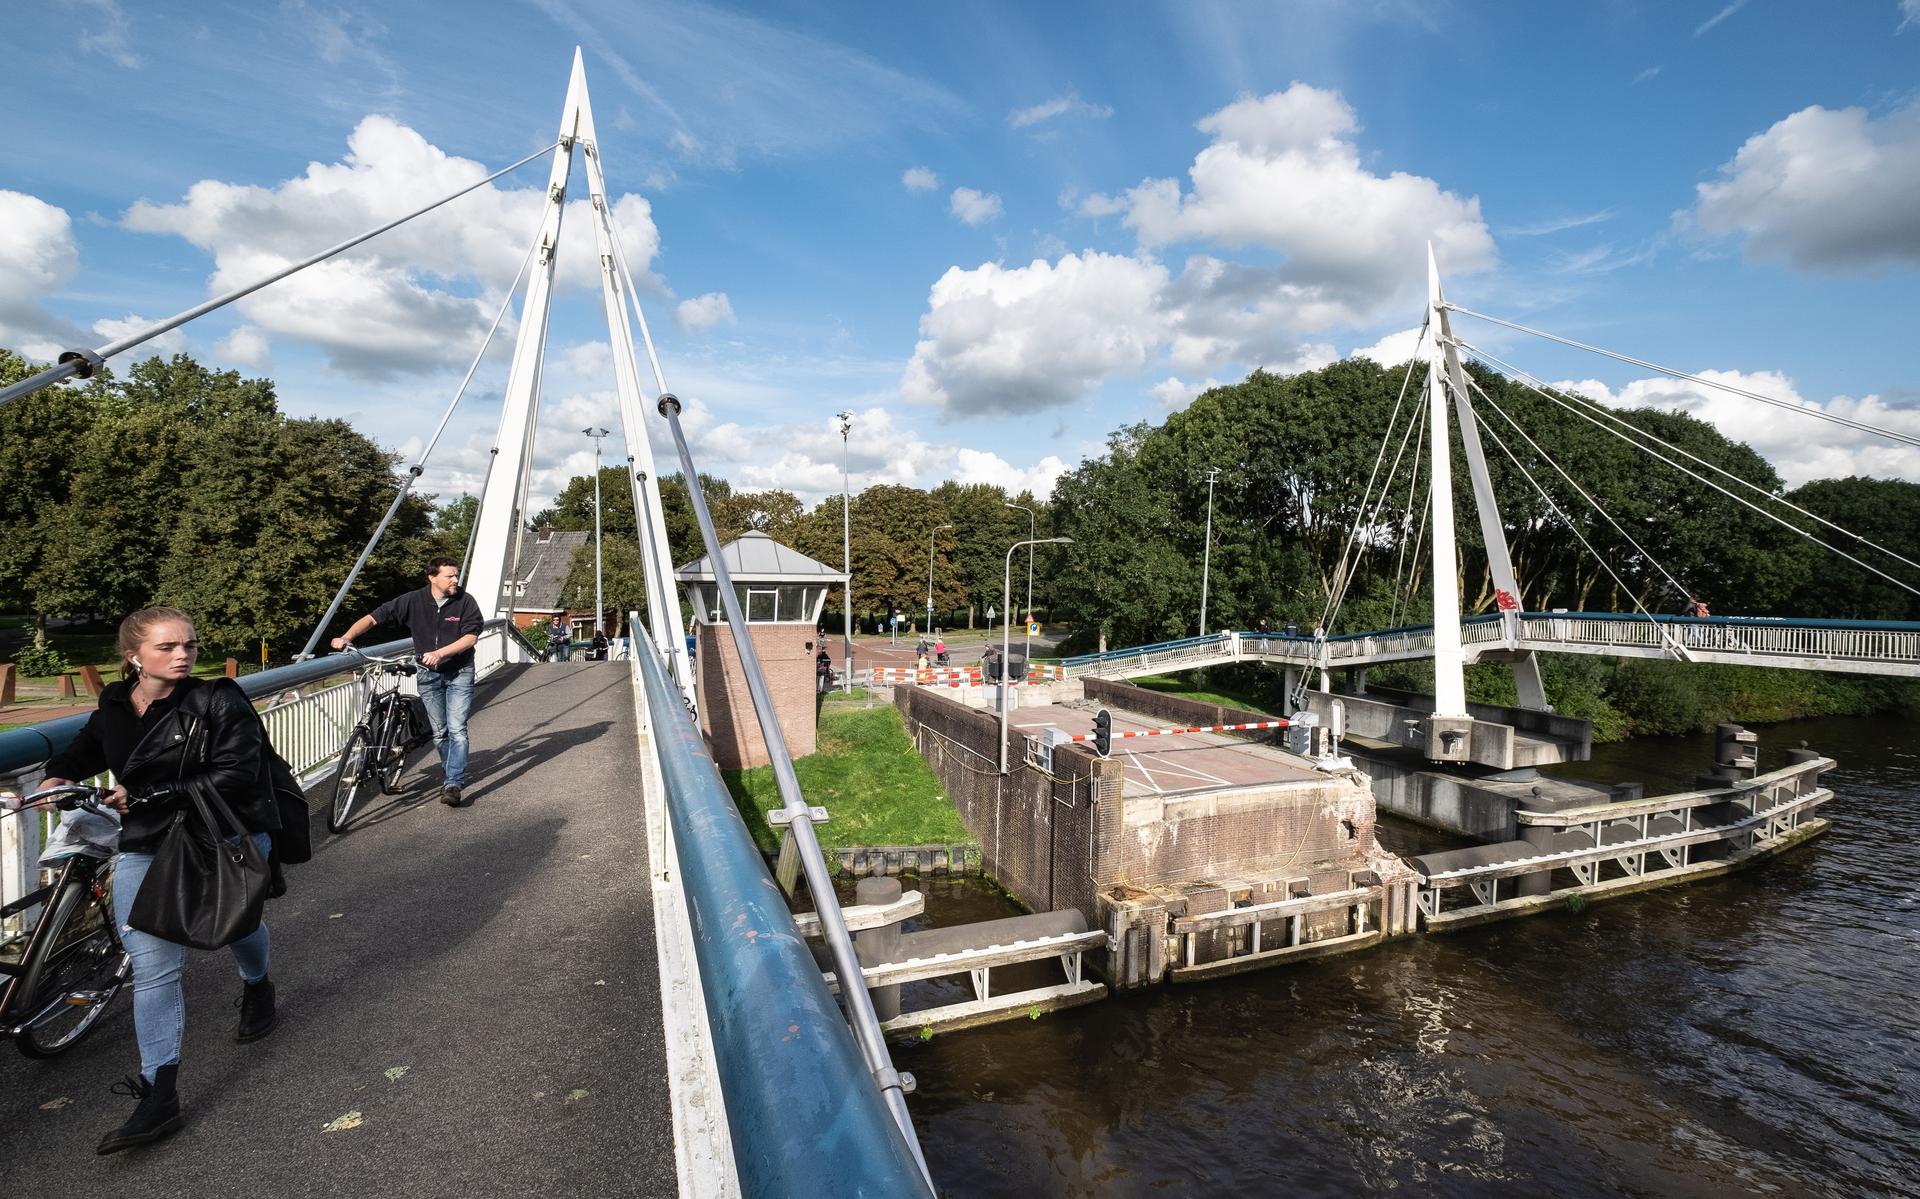 Deze voetgangersbrug, die onderdeel zou vormen van de tijdelijke fietsconstructie voor de Gerrit Krolbrug, die wederom is uitgesteld.